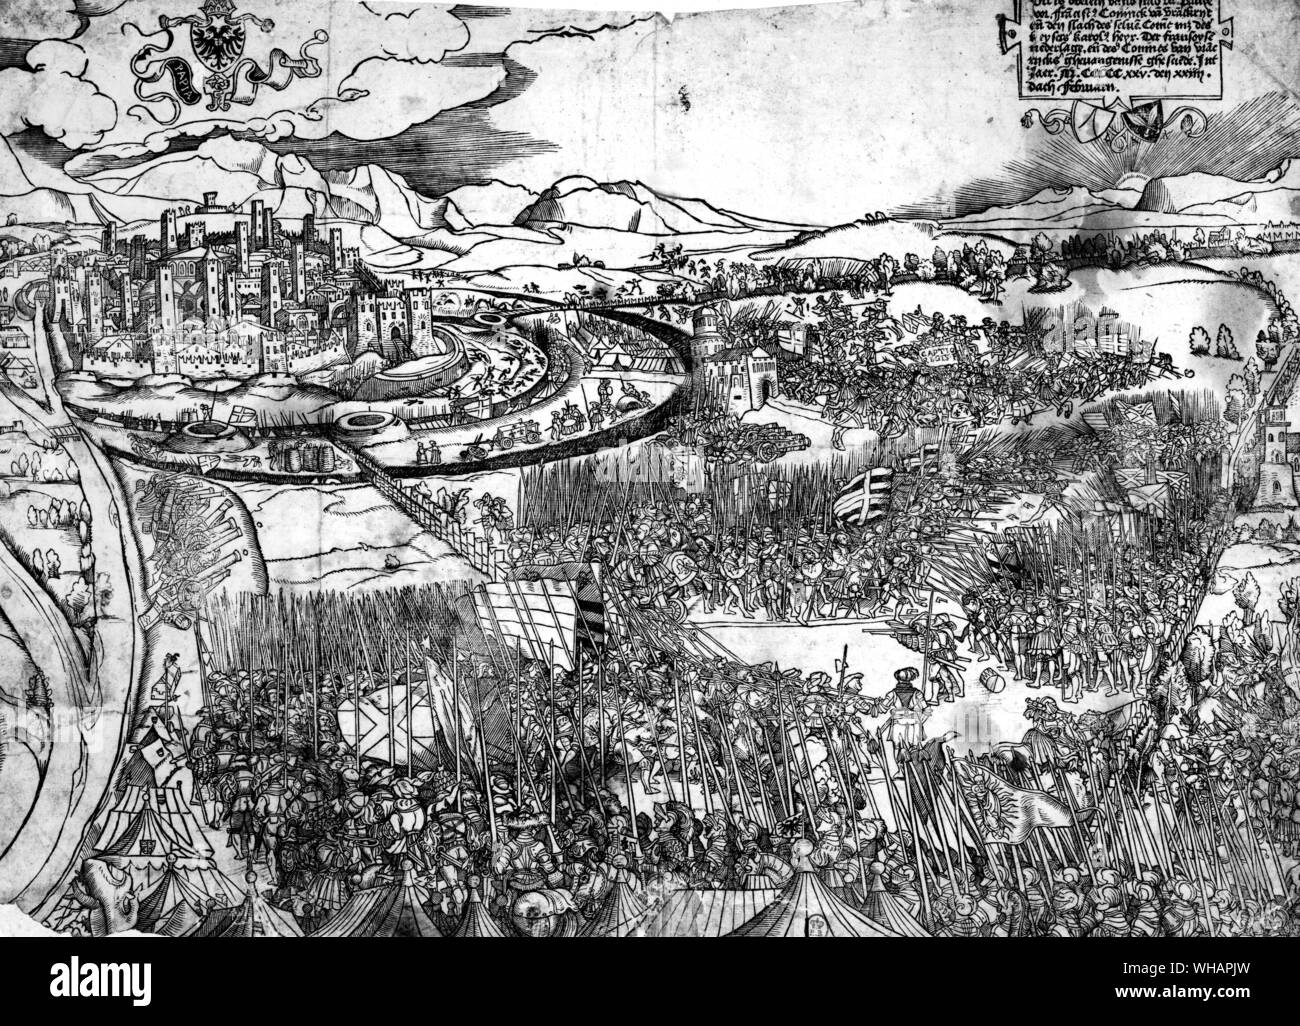 Incisione tedesca della Battaglia di Pavia.. La battaglia di Pavia: 24  febbraio 1525. Una delle ultime battaglie della guerra italiana nel 1525  quando un spagnolo esercito imperiale ha tentato di scaricare un